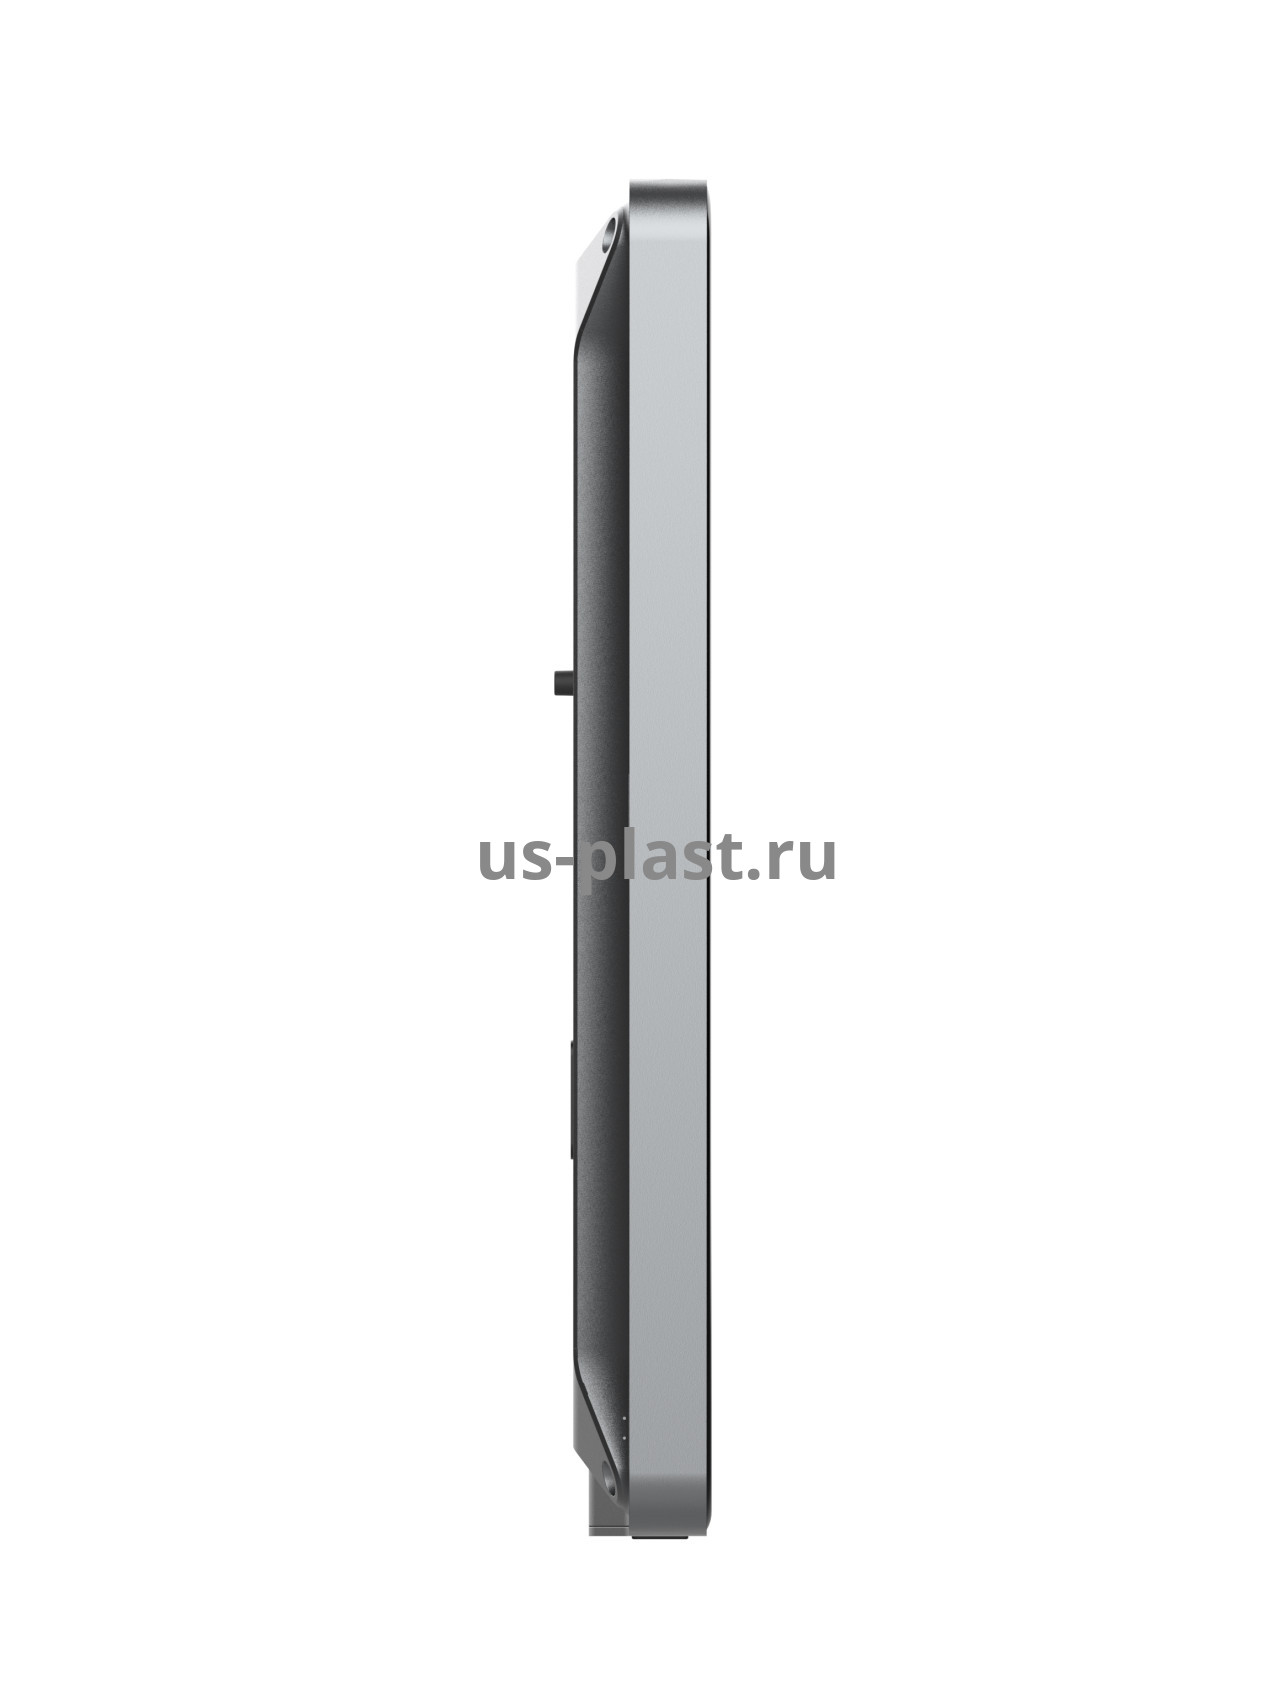 Uni-Ubi Uface 7, биометрический терминал распознавания лиц. Фото N4